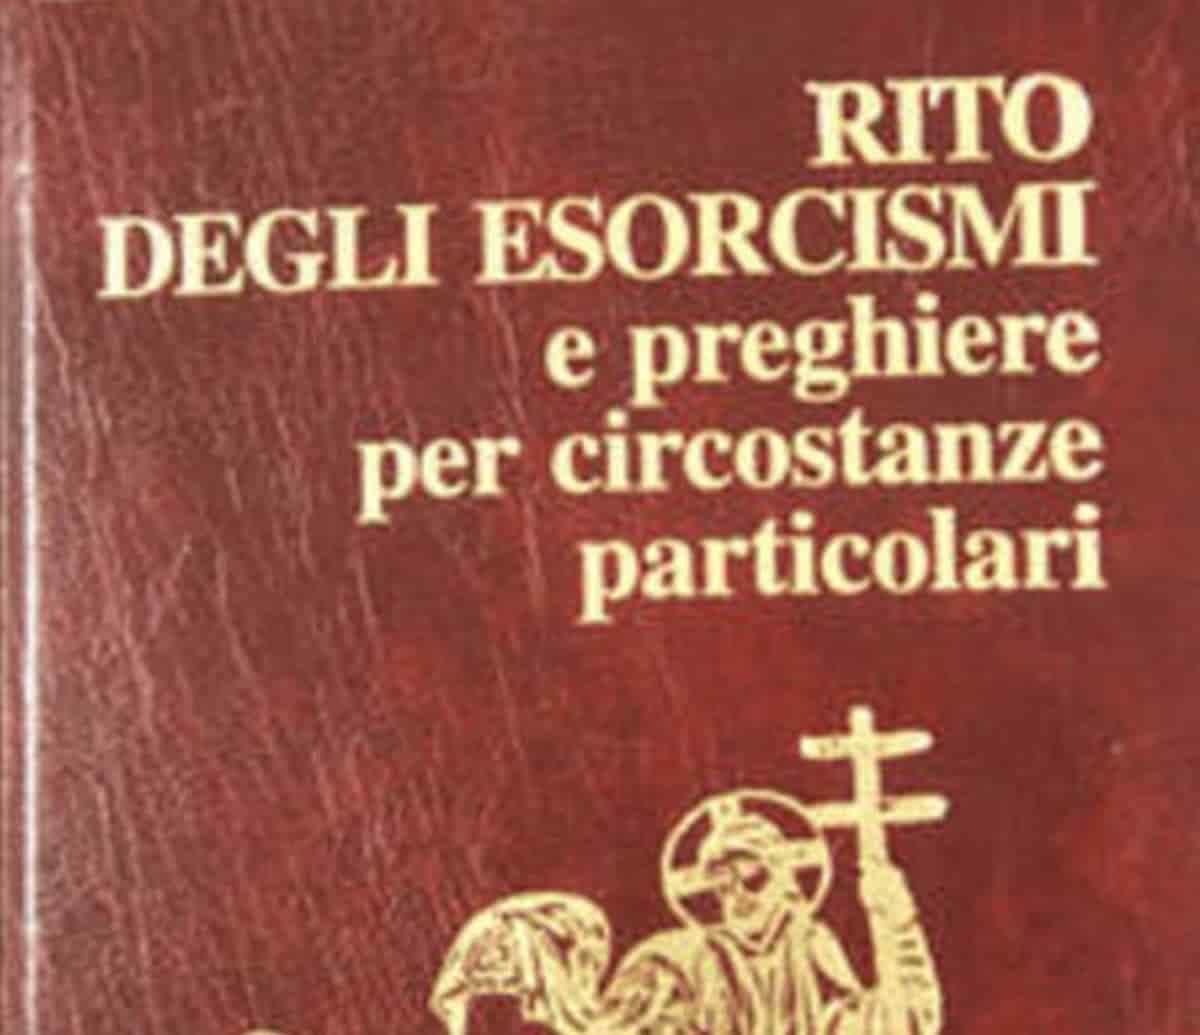 Esorcismo al Santuario di Monte Berico a Vicenza: ragazza urla e bestemmia, interviene il frate esorcista